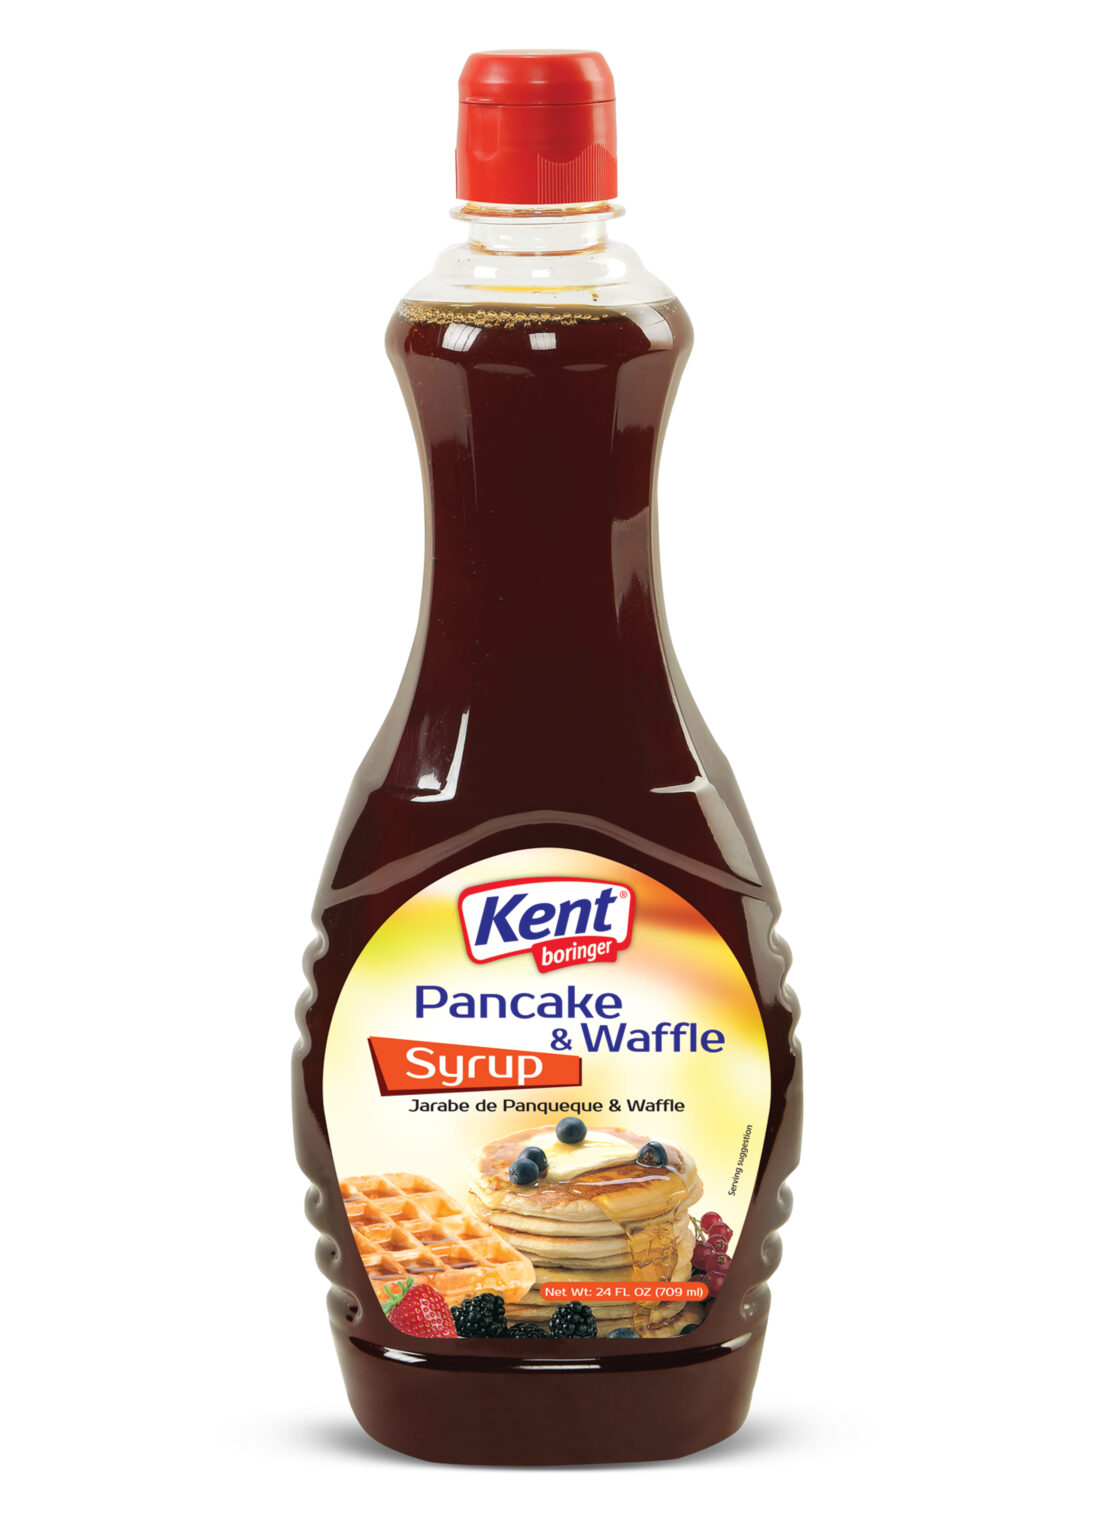 Pancake Syrup 709ml - Kent Boringer USA